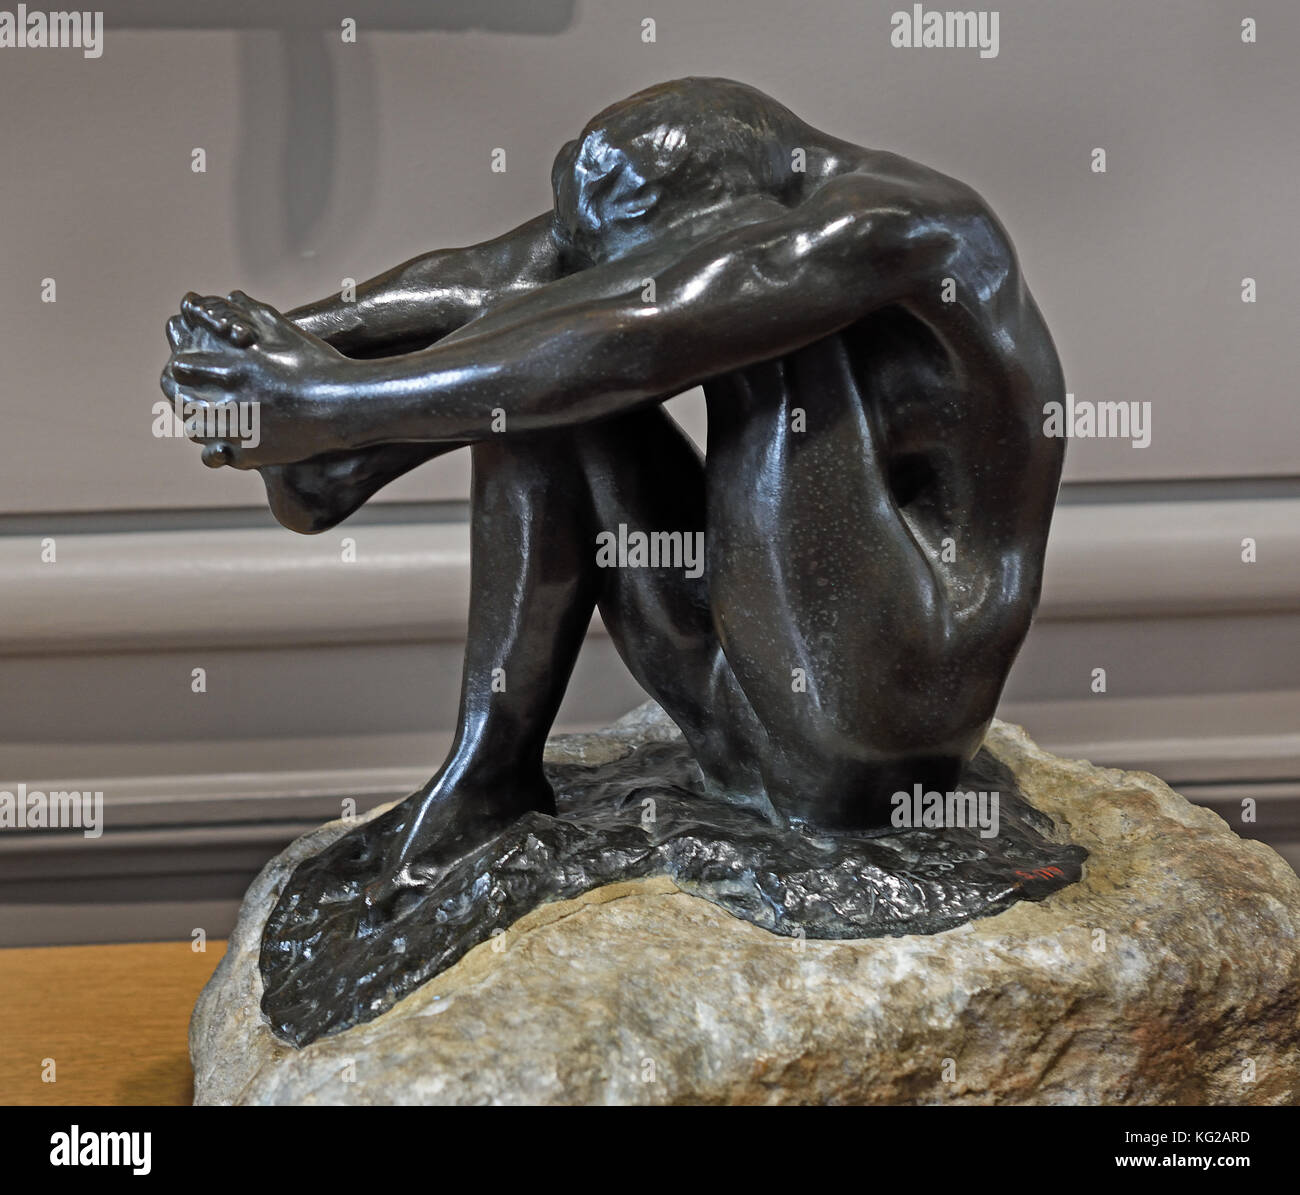 Disperazione 1903 François Auguste René Rodin 1840 -1917 ( noto come Auguste Rodin ) è stato uno scultore francese, Parigi Francia francese. ( Rodin più originale lavoro partì da temi tradizionali della mitologia e allegoria, modellato il corpo umano con realismo e celebrato il carattere individuale e la fisicità). Foto Stock